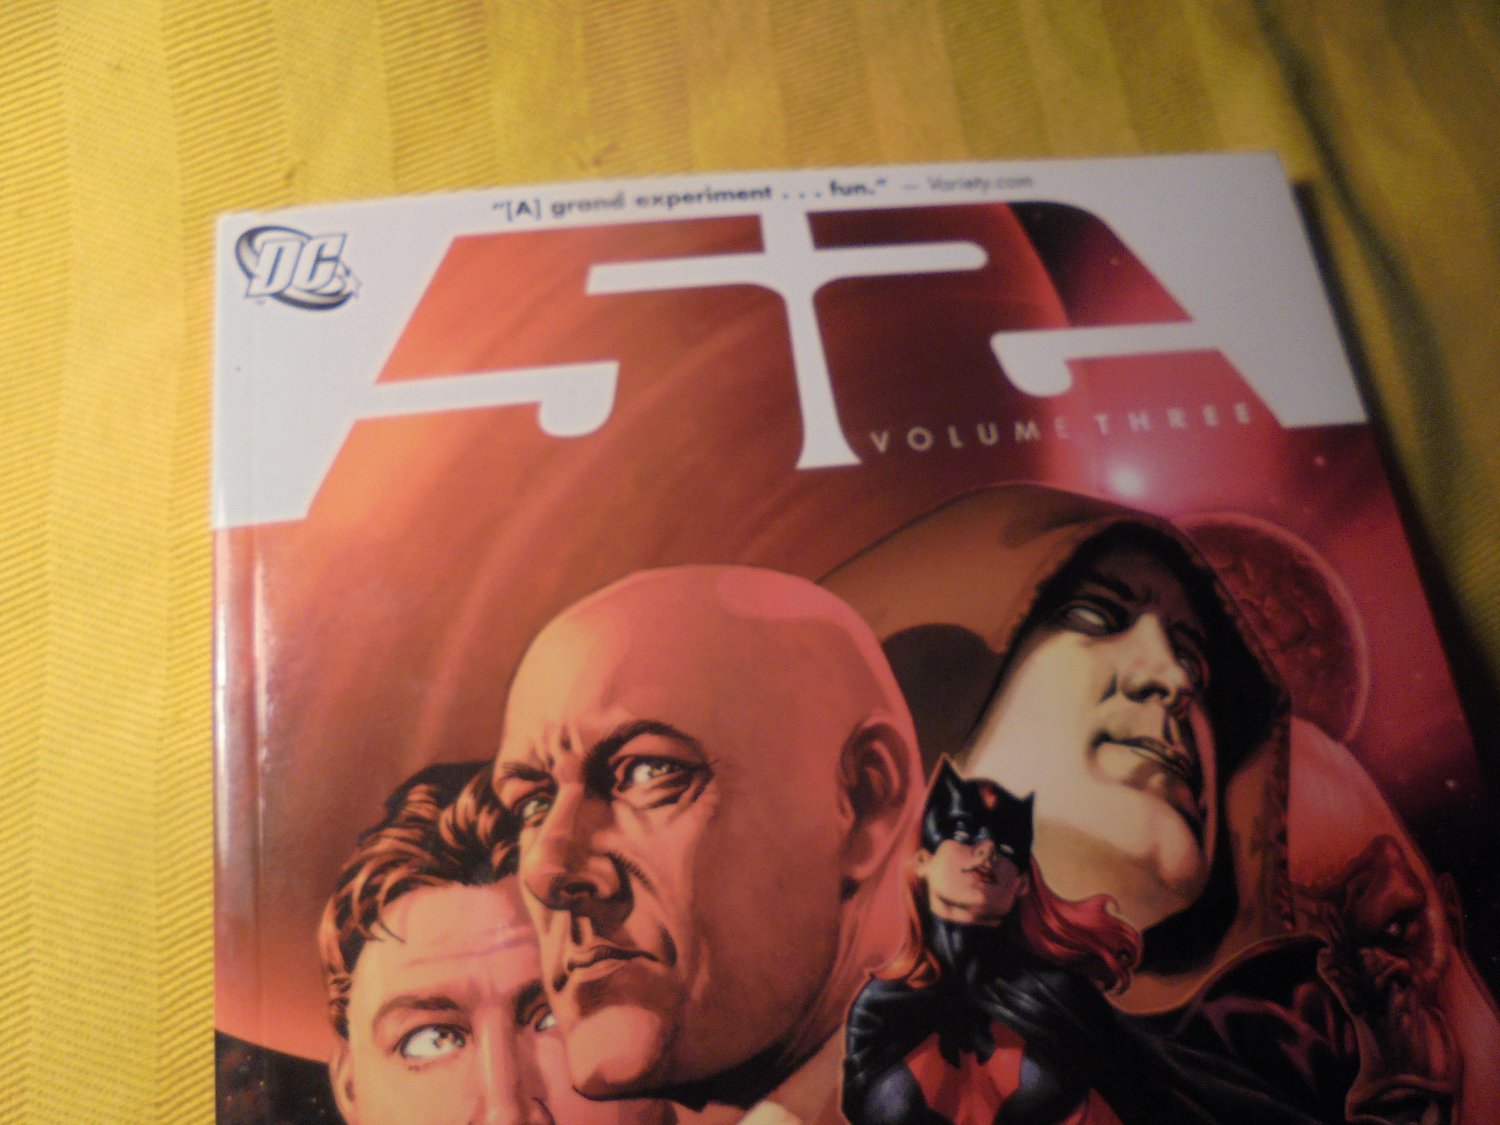 DC Comics "52" Volume Three Paperback * NM- * JSA, LOSH, Ralph Dibney!! MINT! $13.00!!